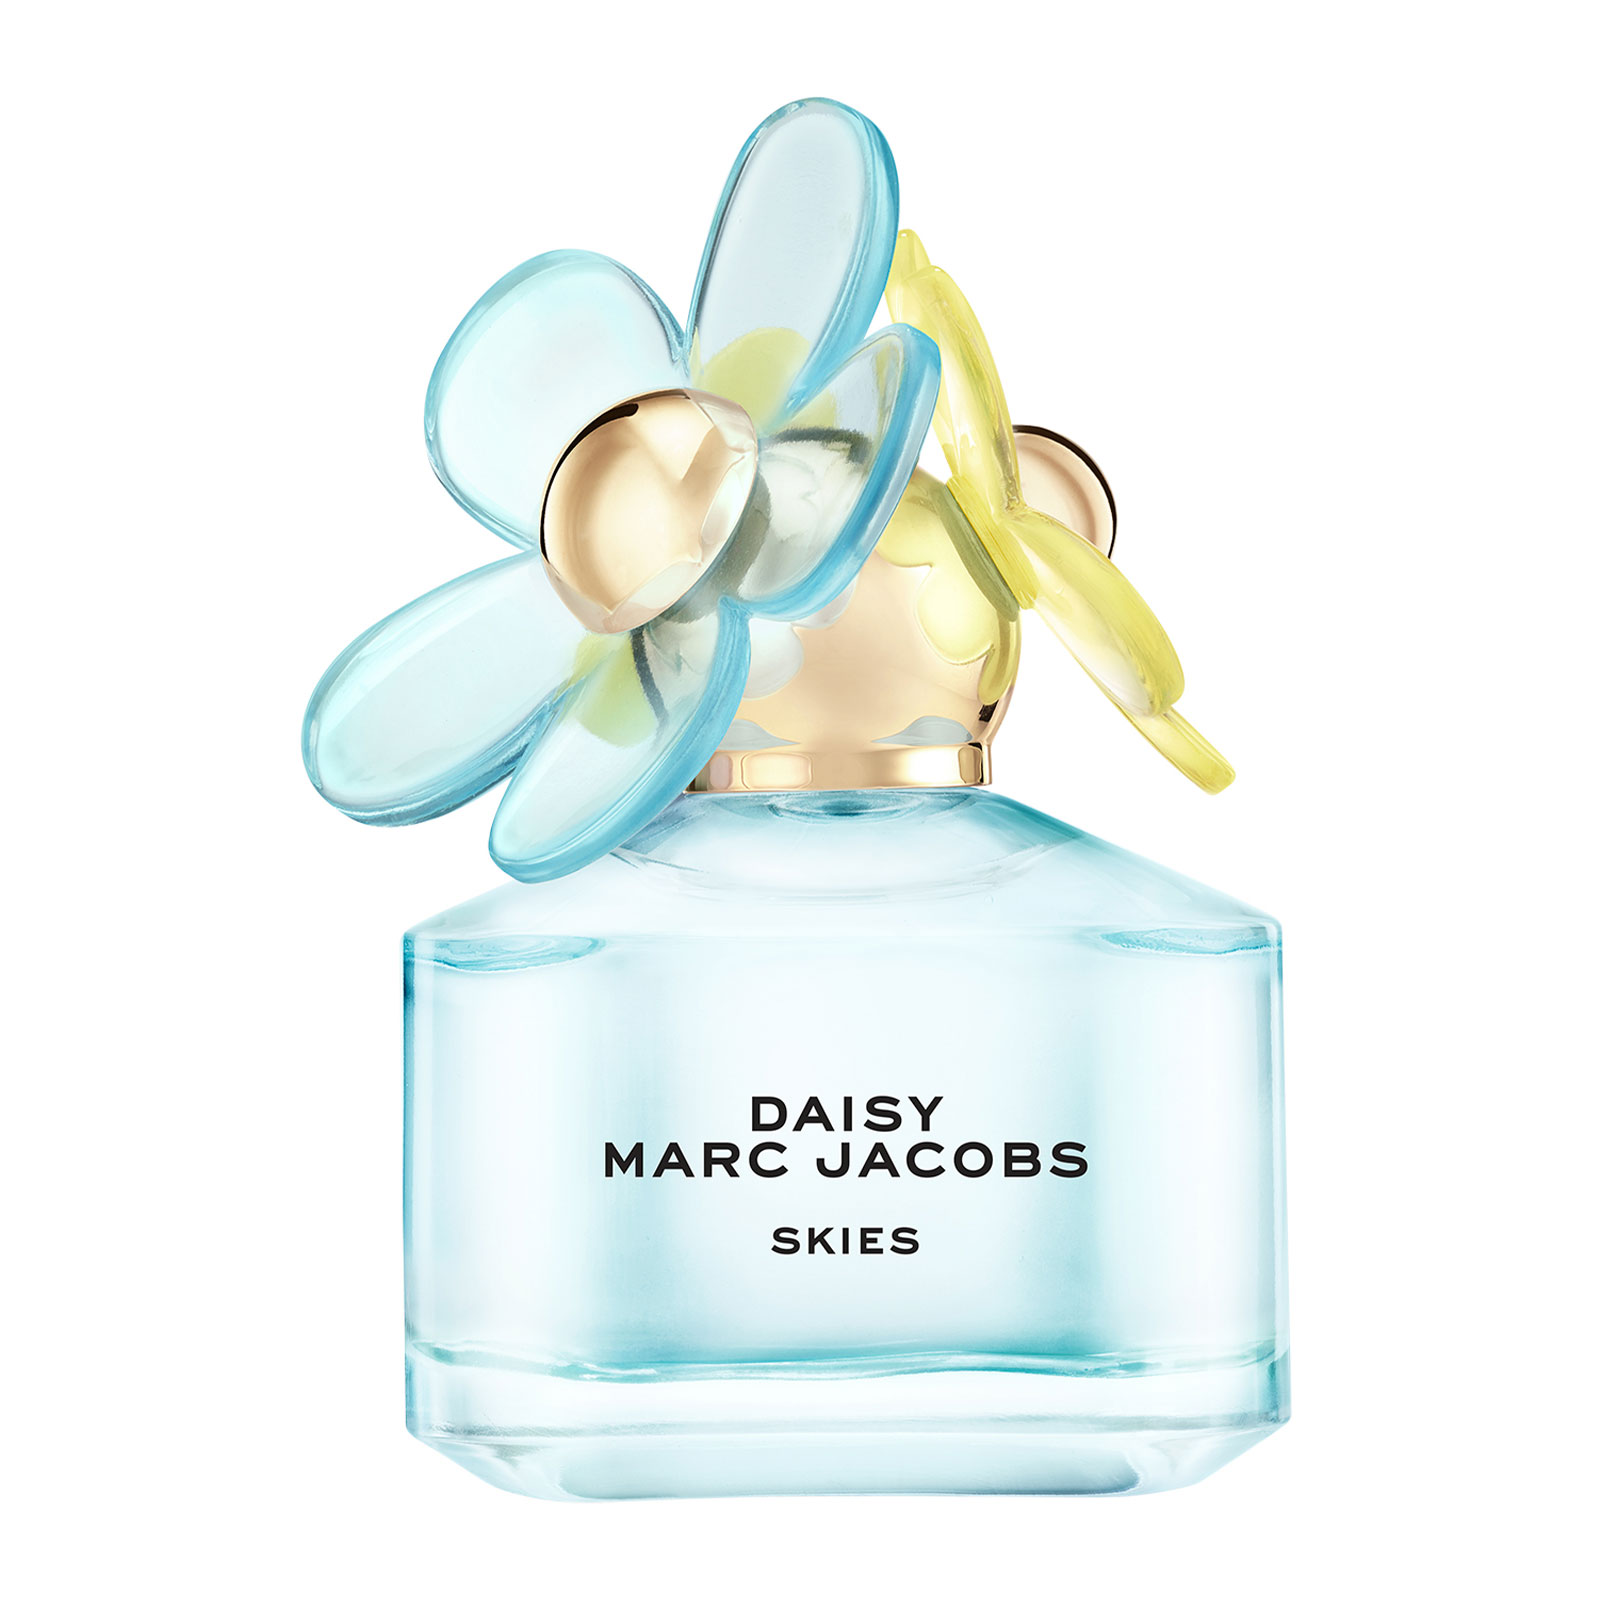 Marc Jacobs Daisy Skies Limited Edition Eau de Toilette 50ml